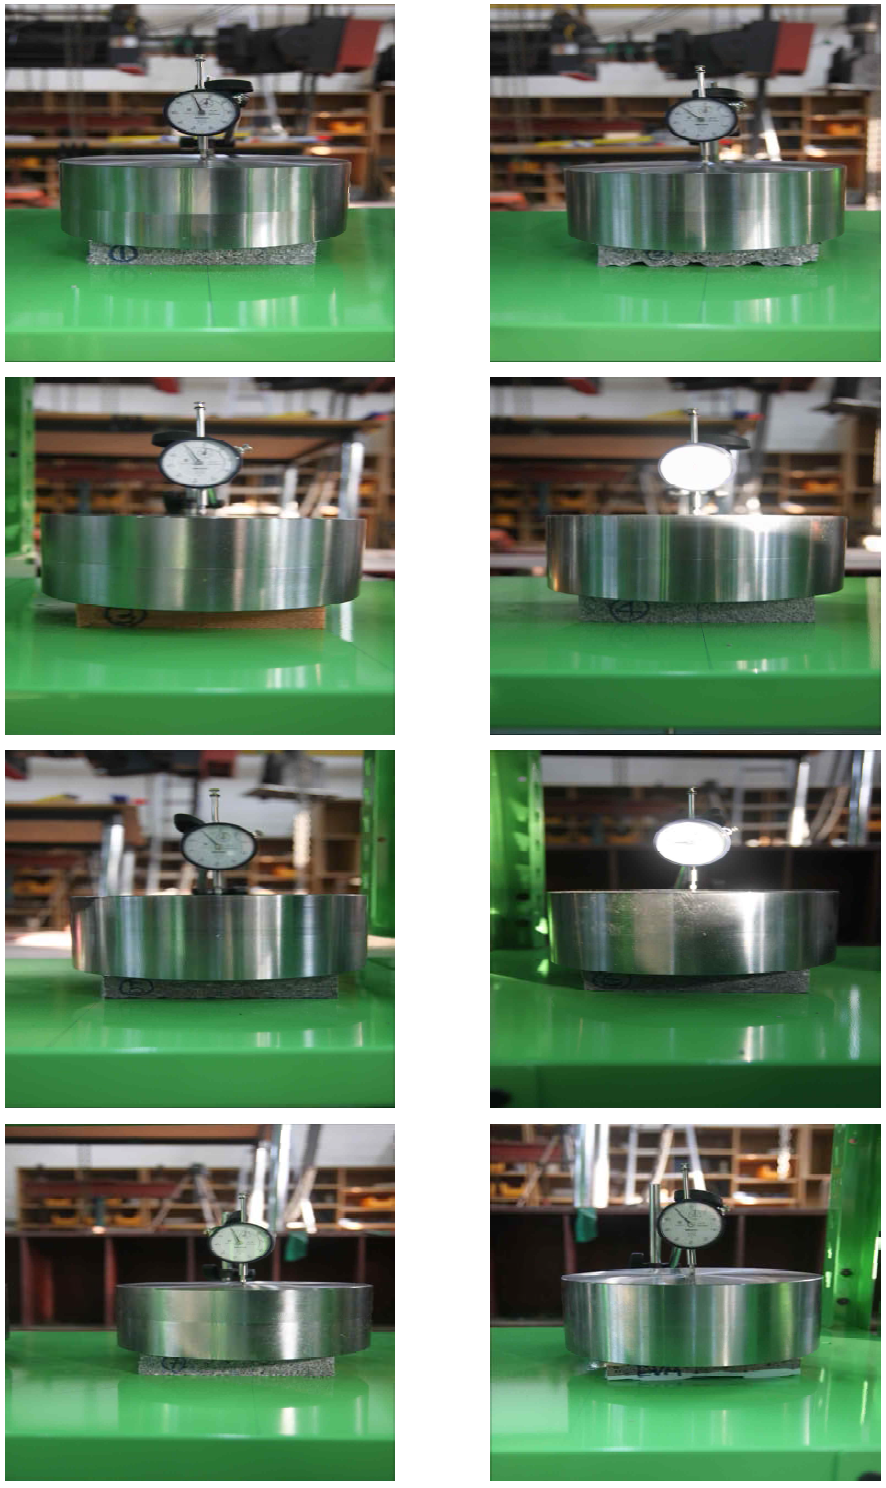 장기변형 250N 가력 실험체 각각의 Setting 사진